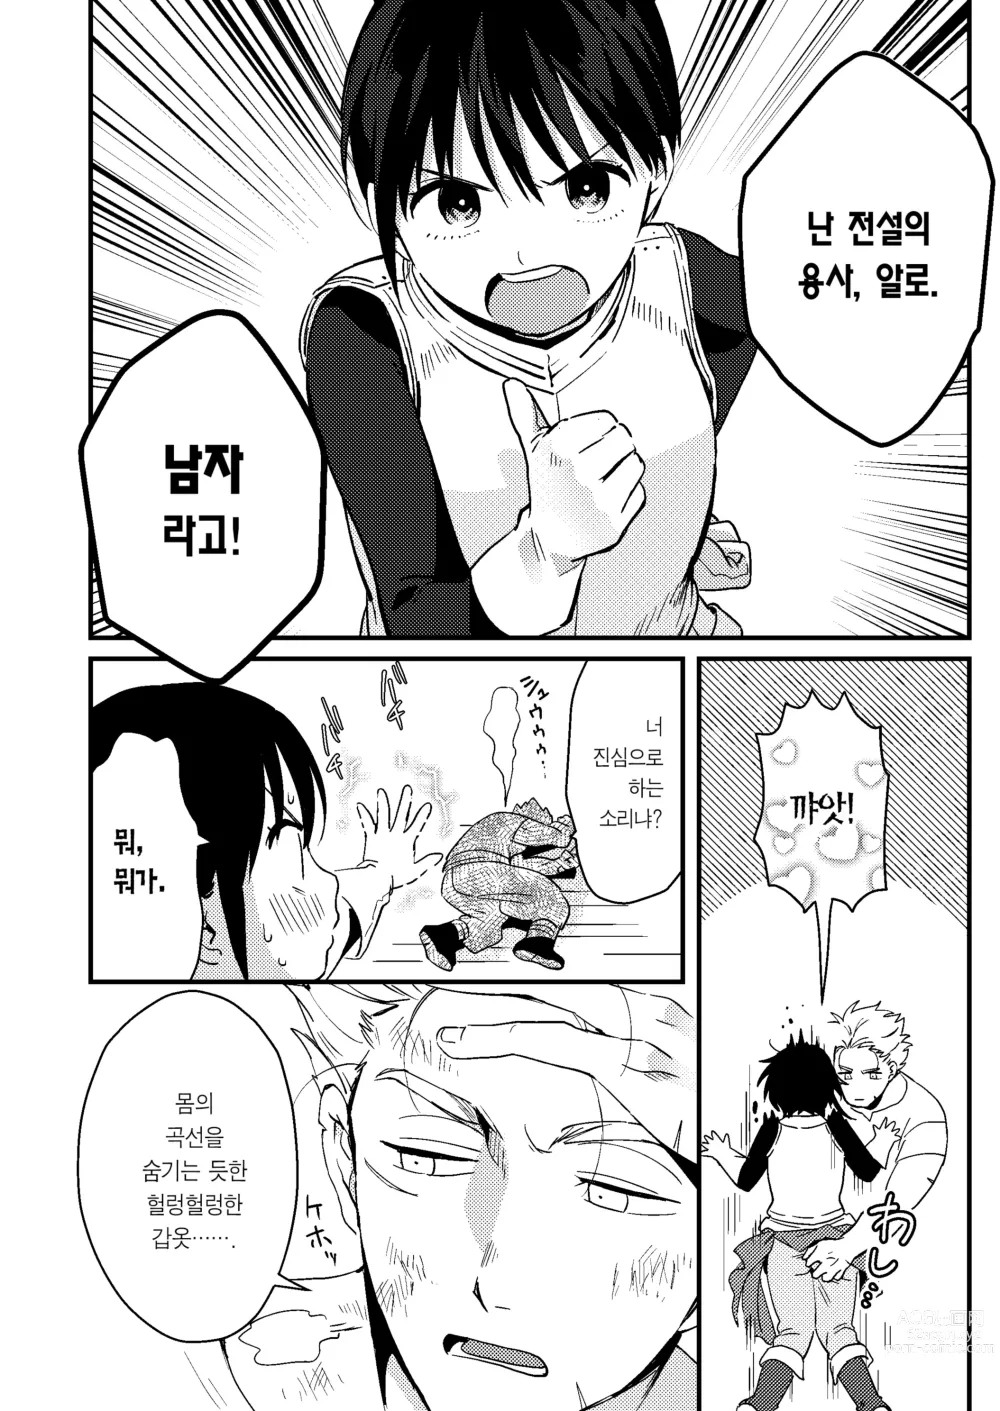 Page 7 of doujinshi 세계가 평화로워져서 용사(사실은 ♀)에게 구혼한 결과